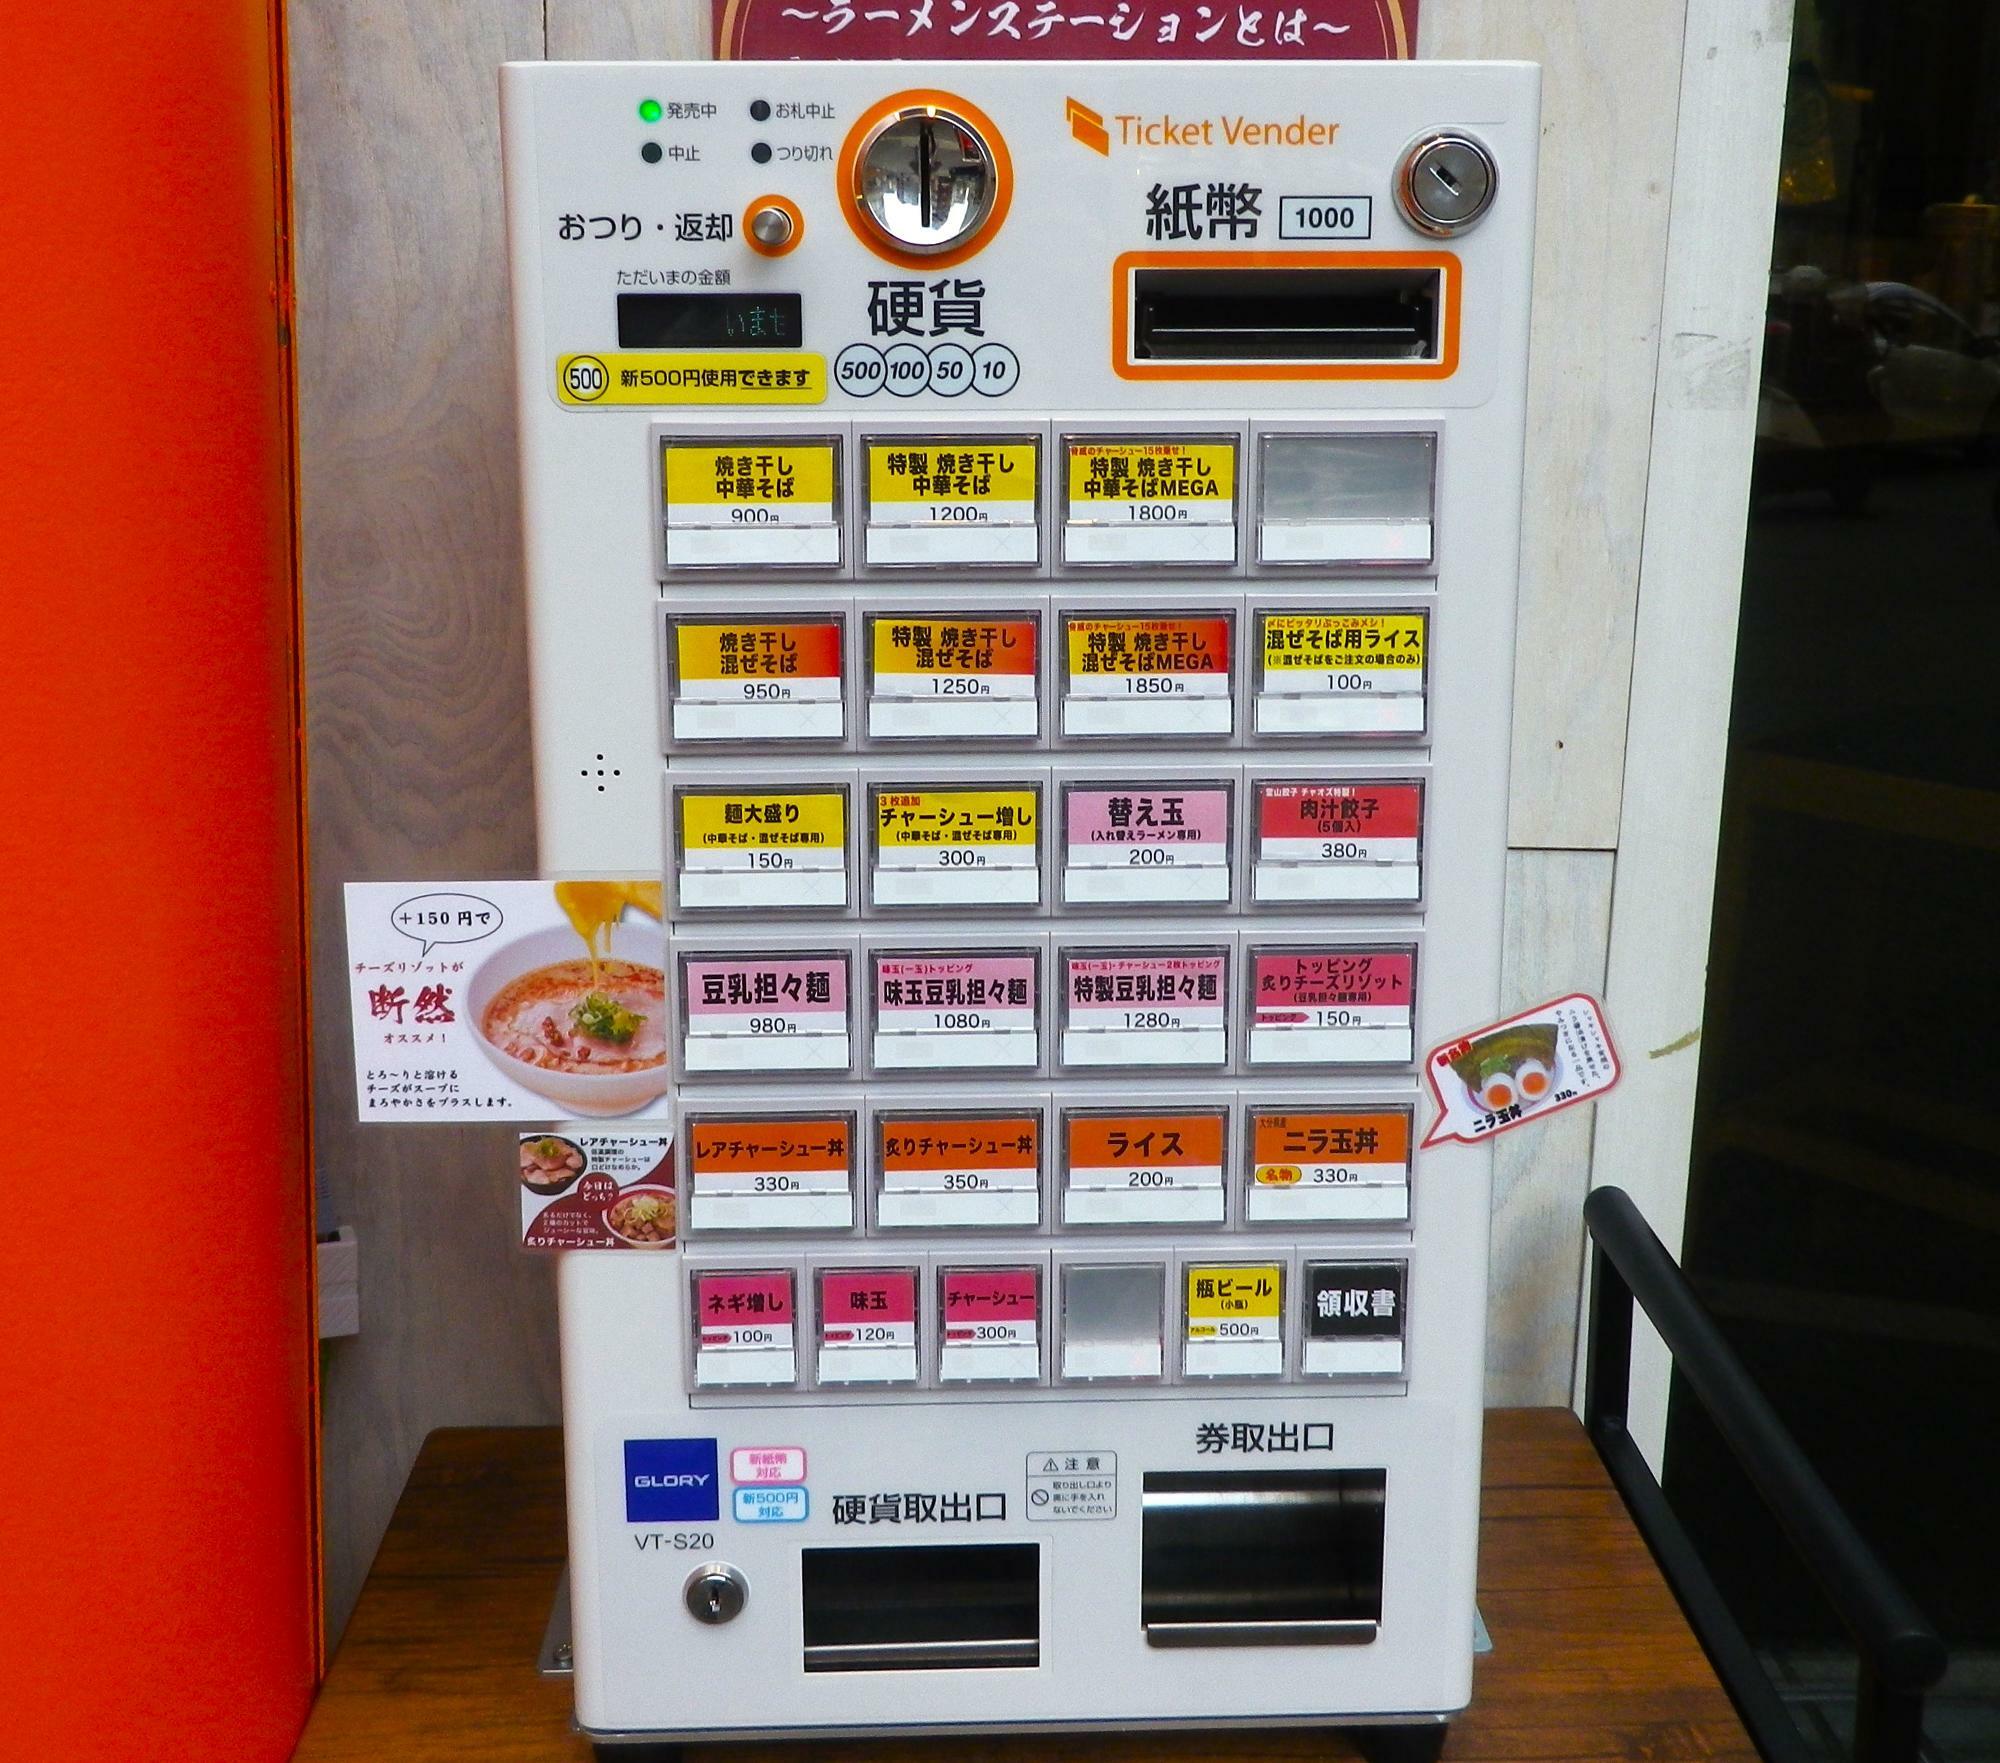 「ラーメンステーション西中島南方」の食券機。